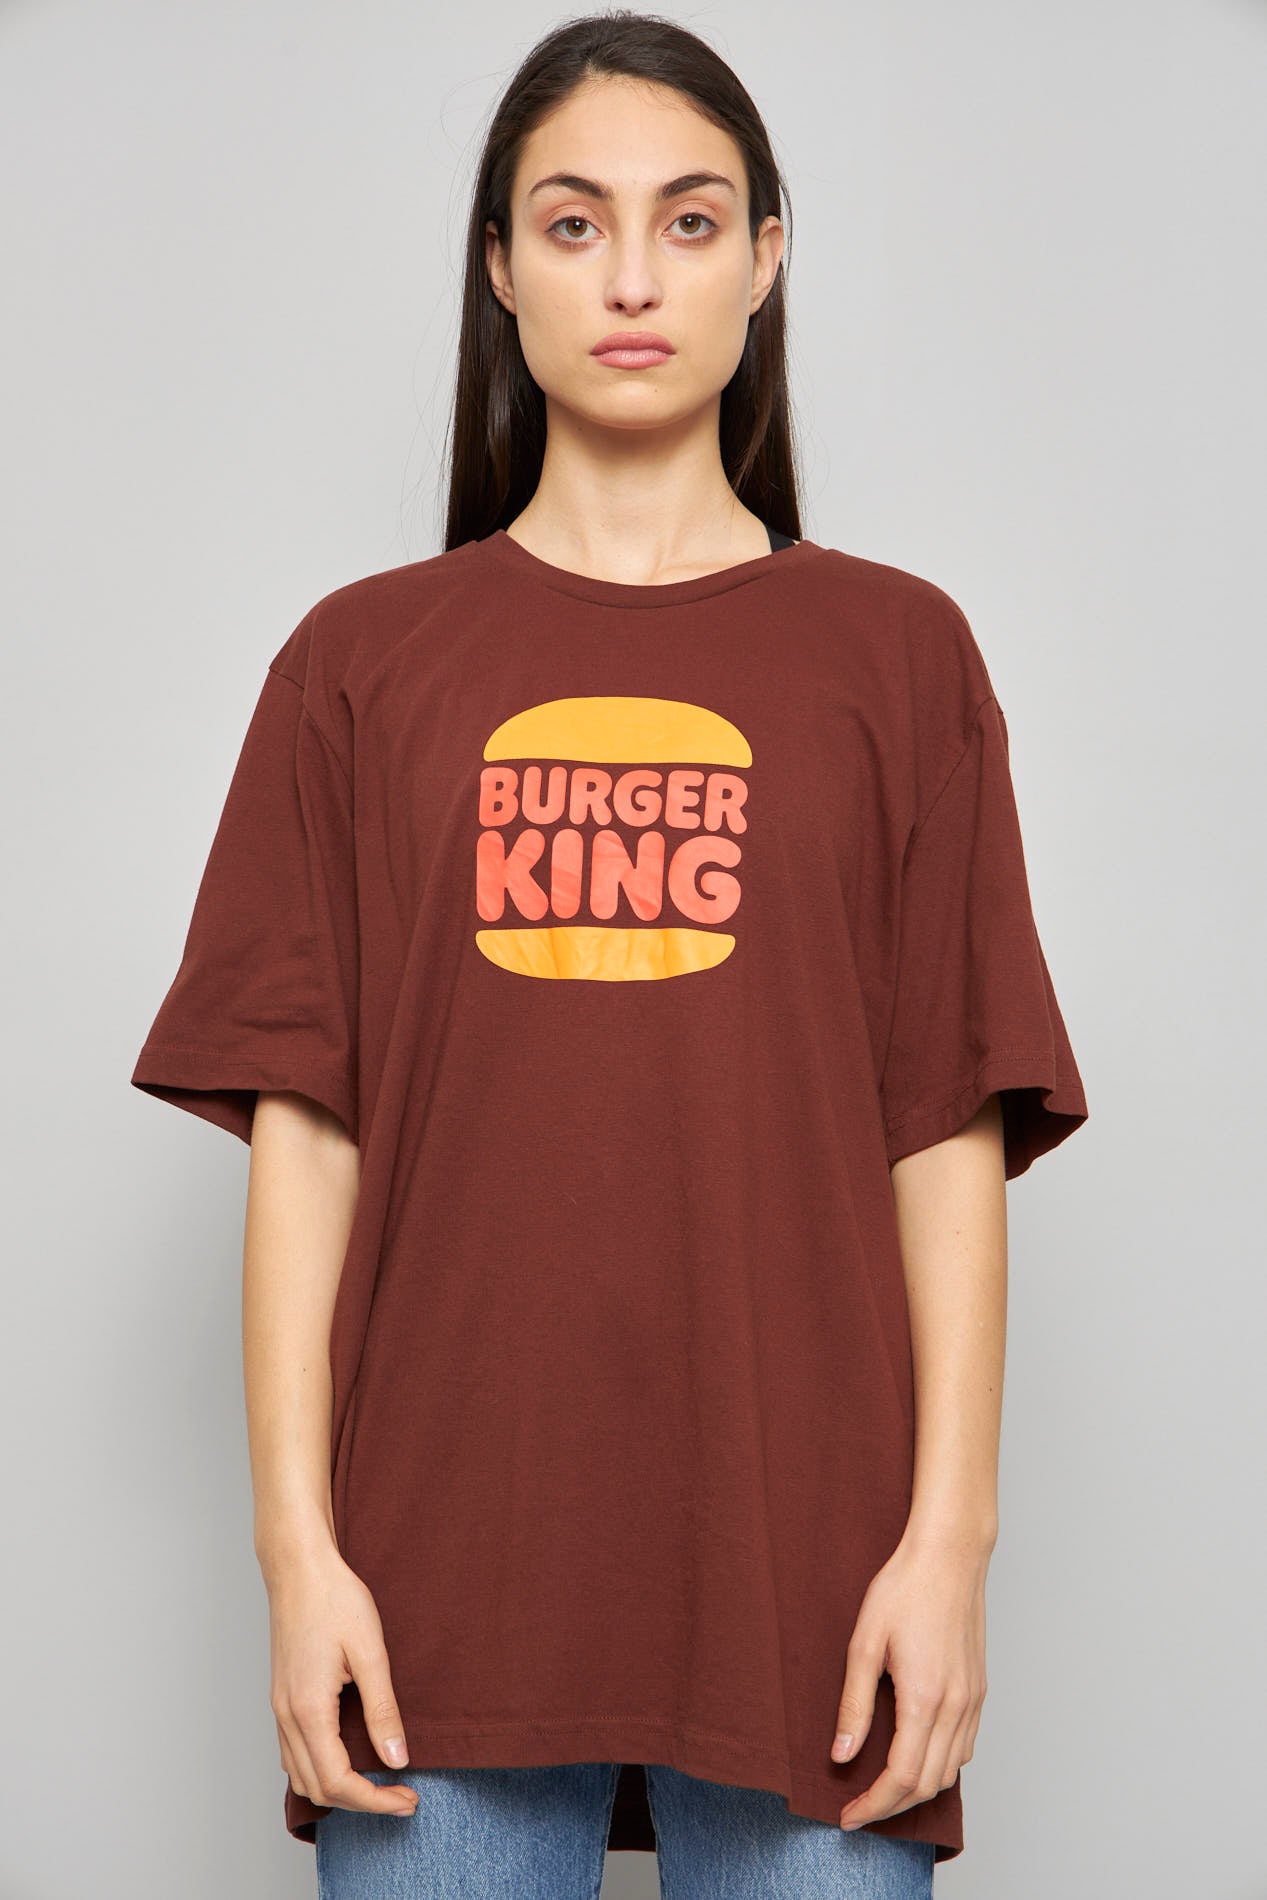 Polera casual  café burger king talla Xl 524